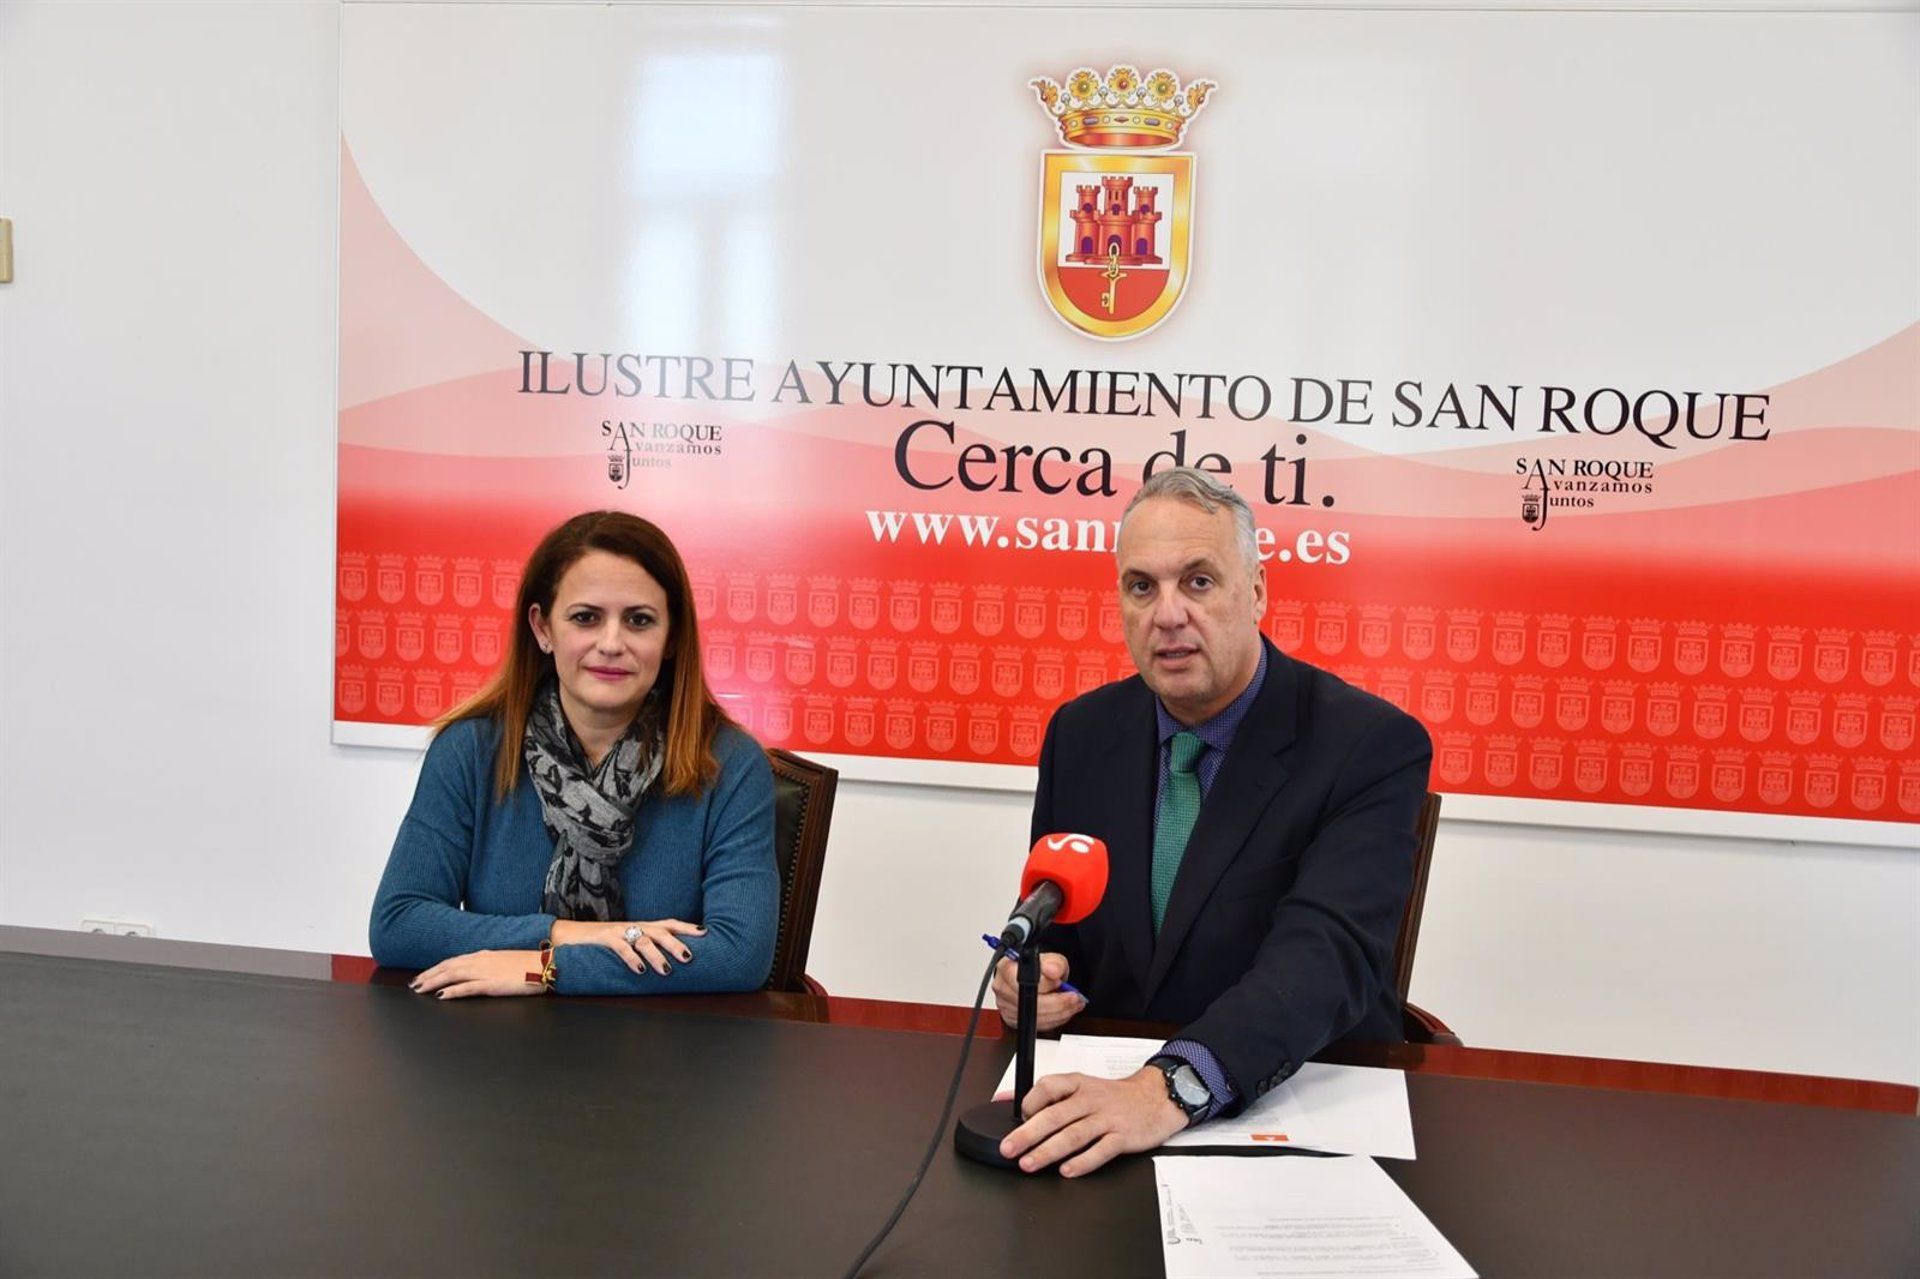 San Roque lidera la inversión social entre los ayuntamientos de Cádiz. En la imagen, el alcalde Ruiz Boix en rueda de prensa.